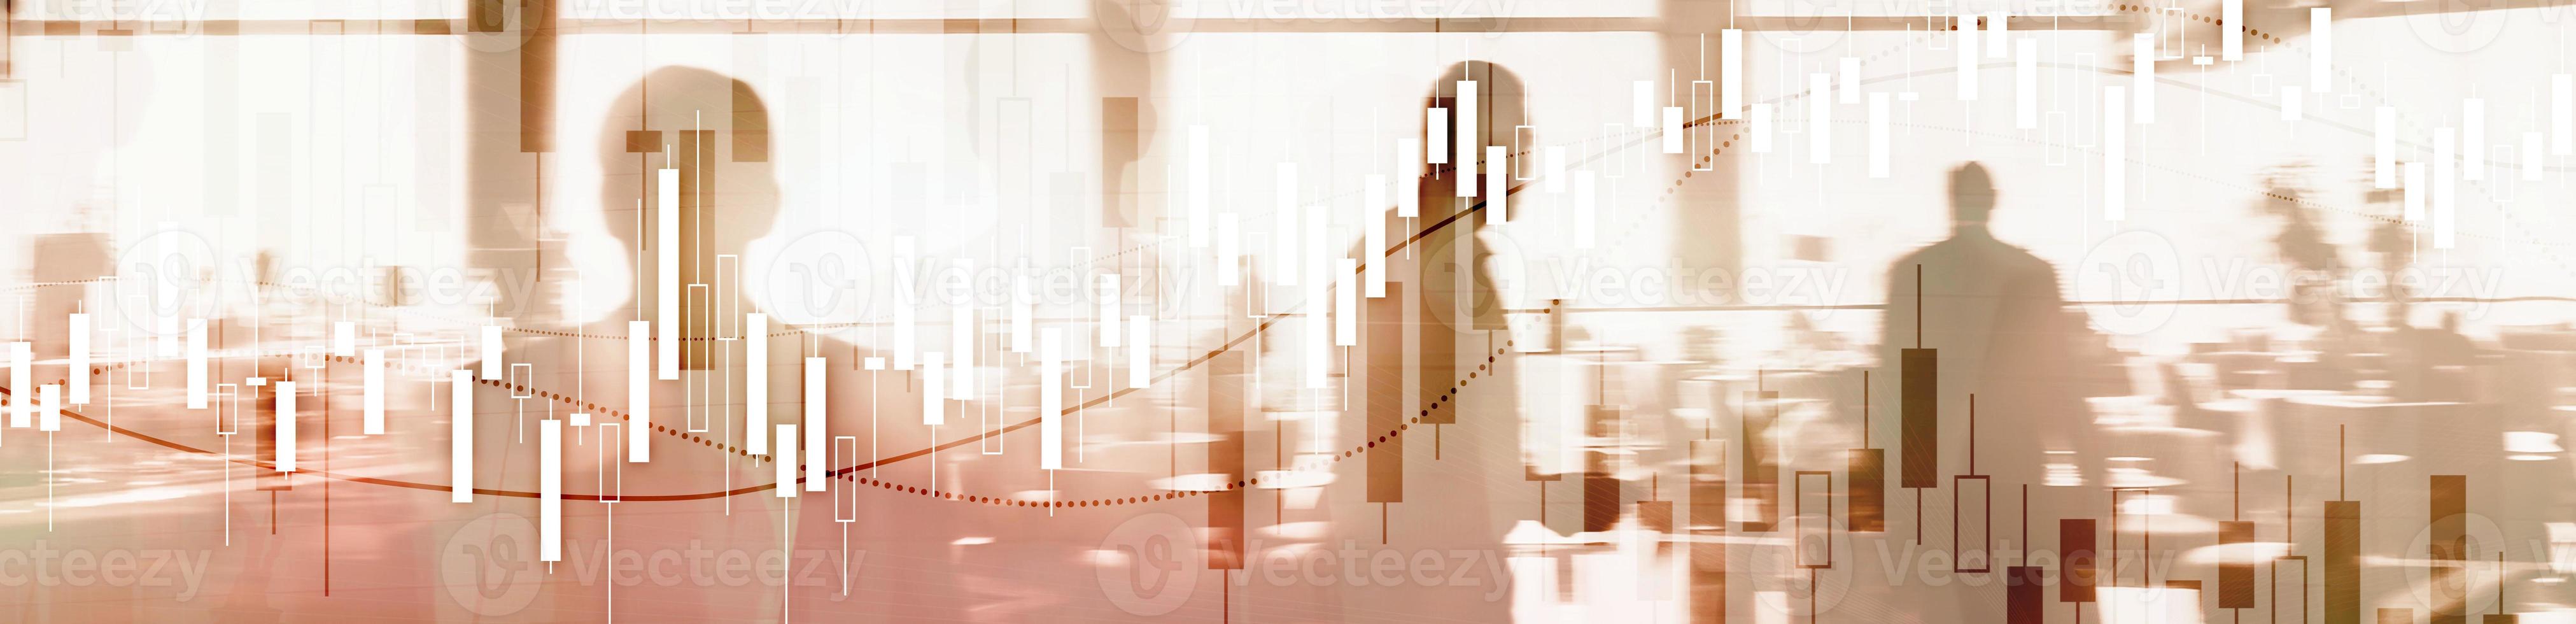 gráfico del mercado de valores financiero. banner economico del sitio web foto